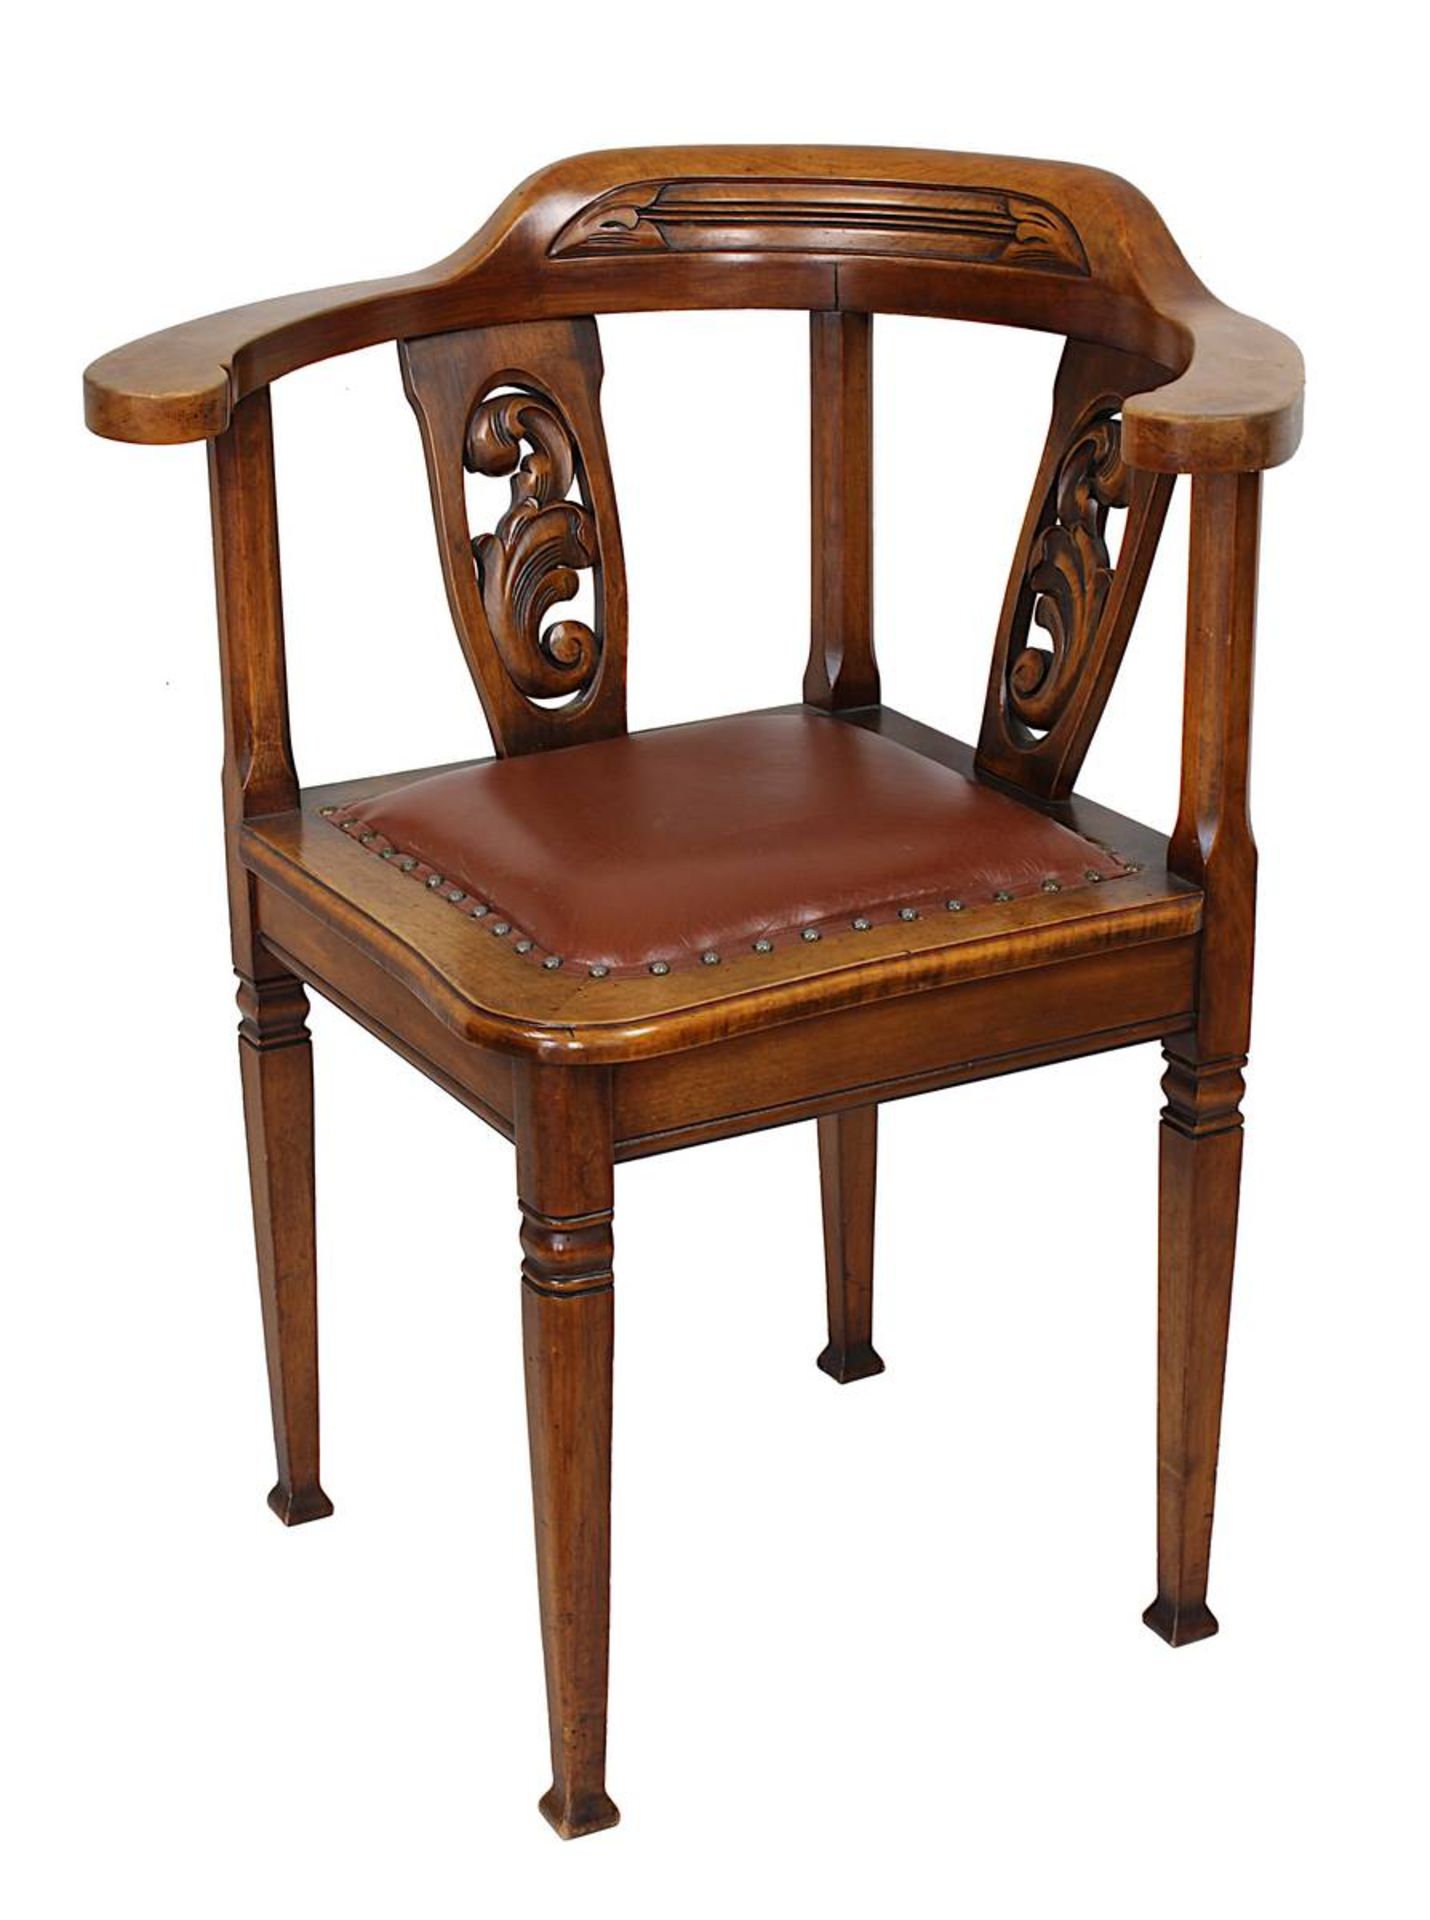 Schreibtisch-Stuhl, deutsch um 1900, Buchen- und Nussholz, rautenförmige Sitzfläche, geschwungene